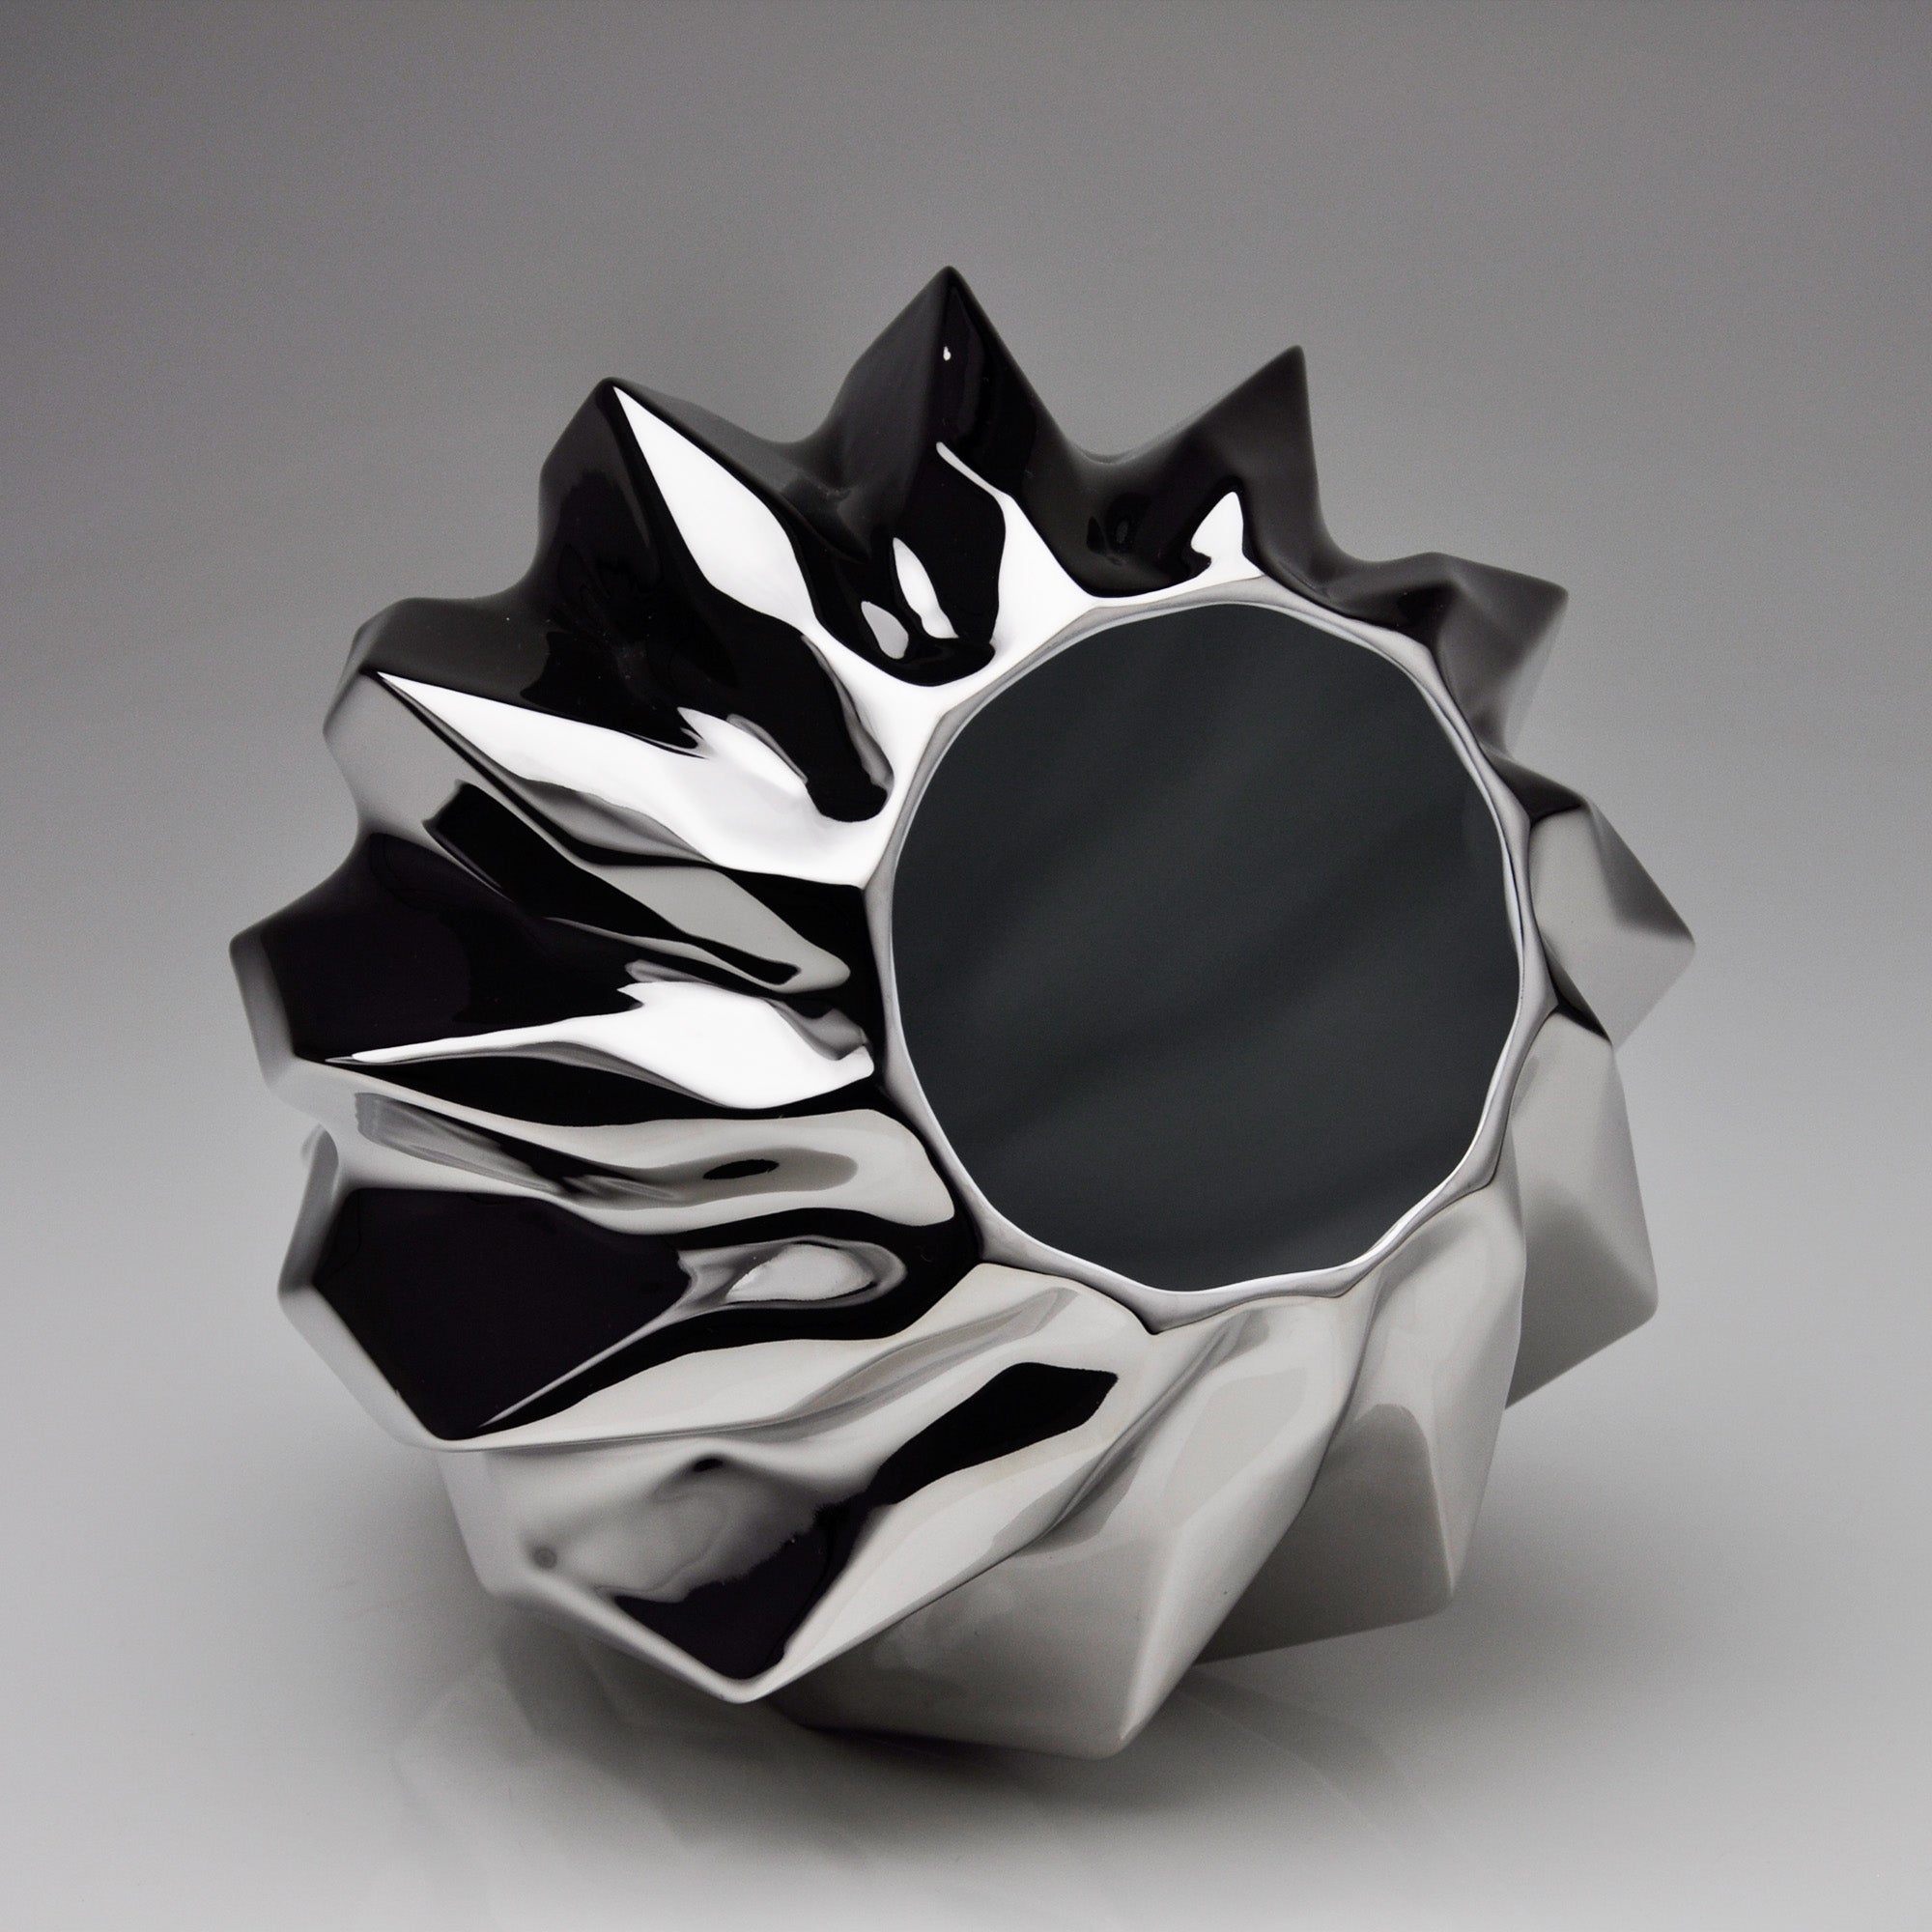 Plissan Geométrico P Porcelain Vase (h16 cm) - Holaria